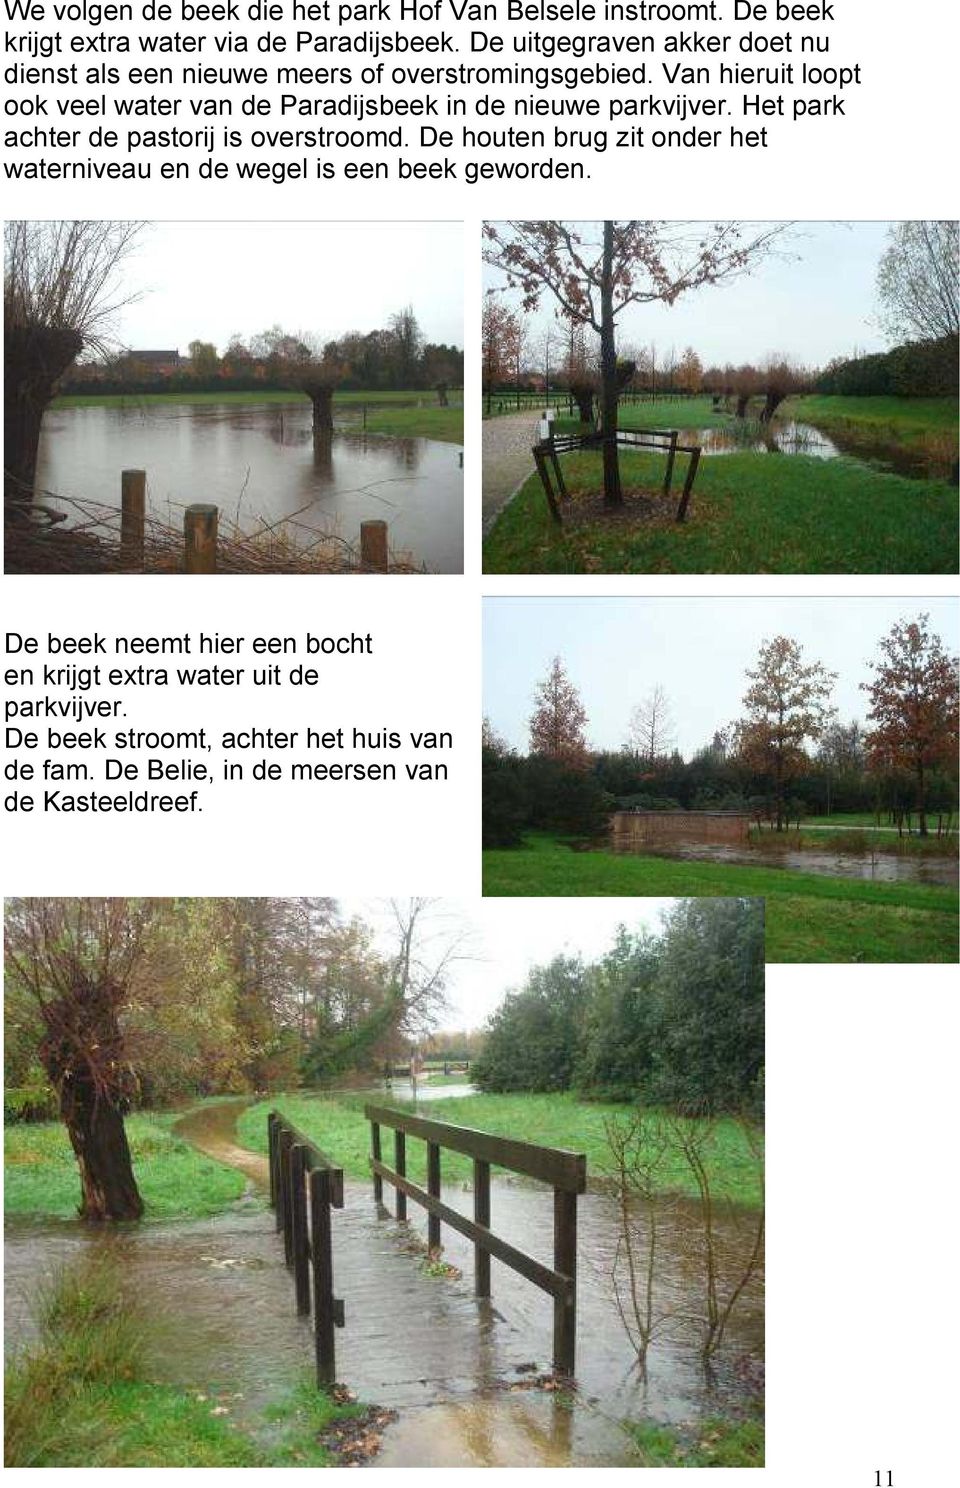 Van hieruit loopt ook veel water van de Paradijsbeek in de nieuwe parkvijver. Het park achter de pastorij is overstroomd.